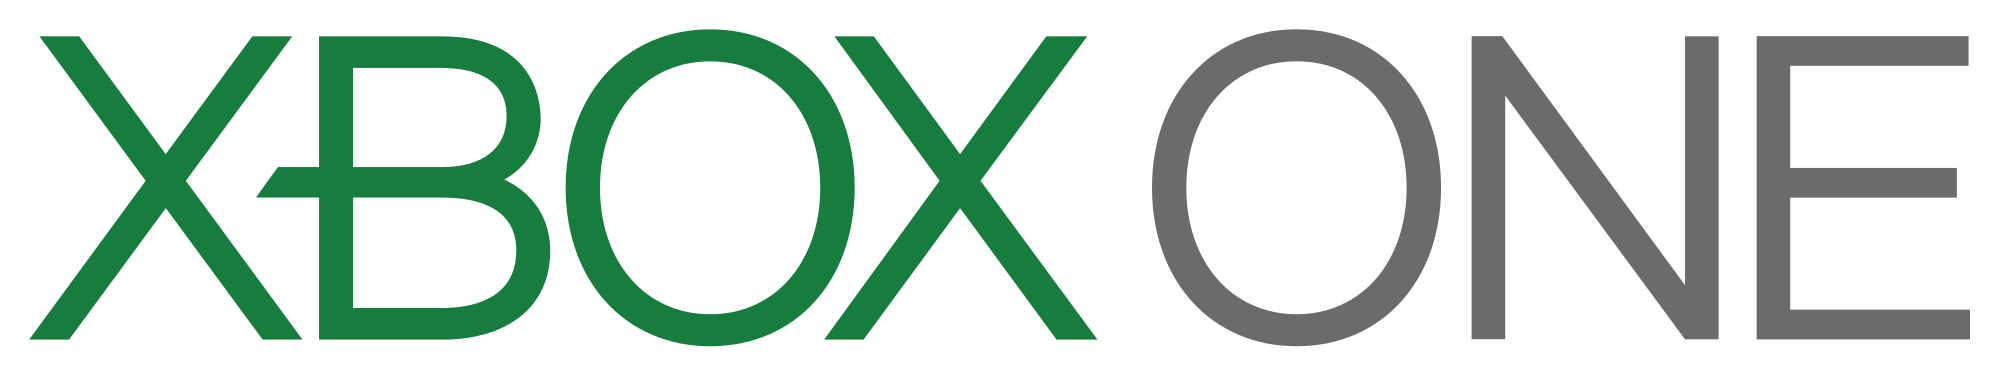 Xbox 1 Logo - File:Xbox One logo wordmark.svg - Wikimedia Commons